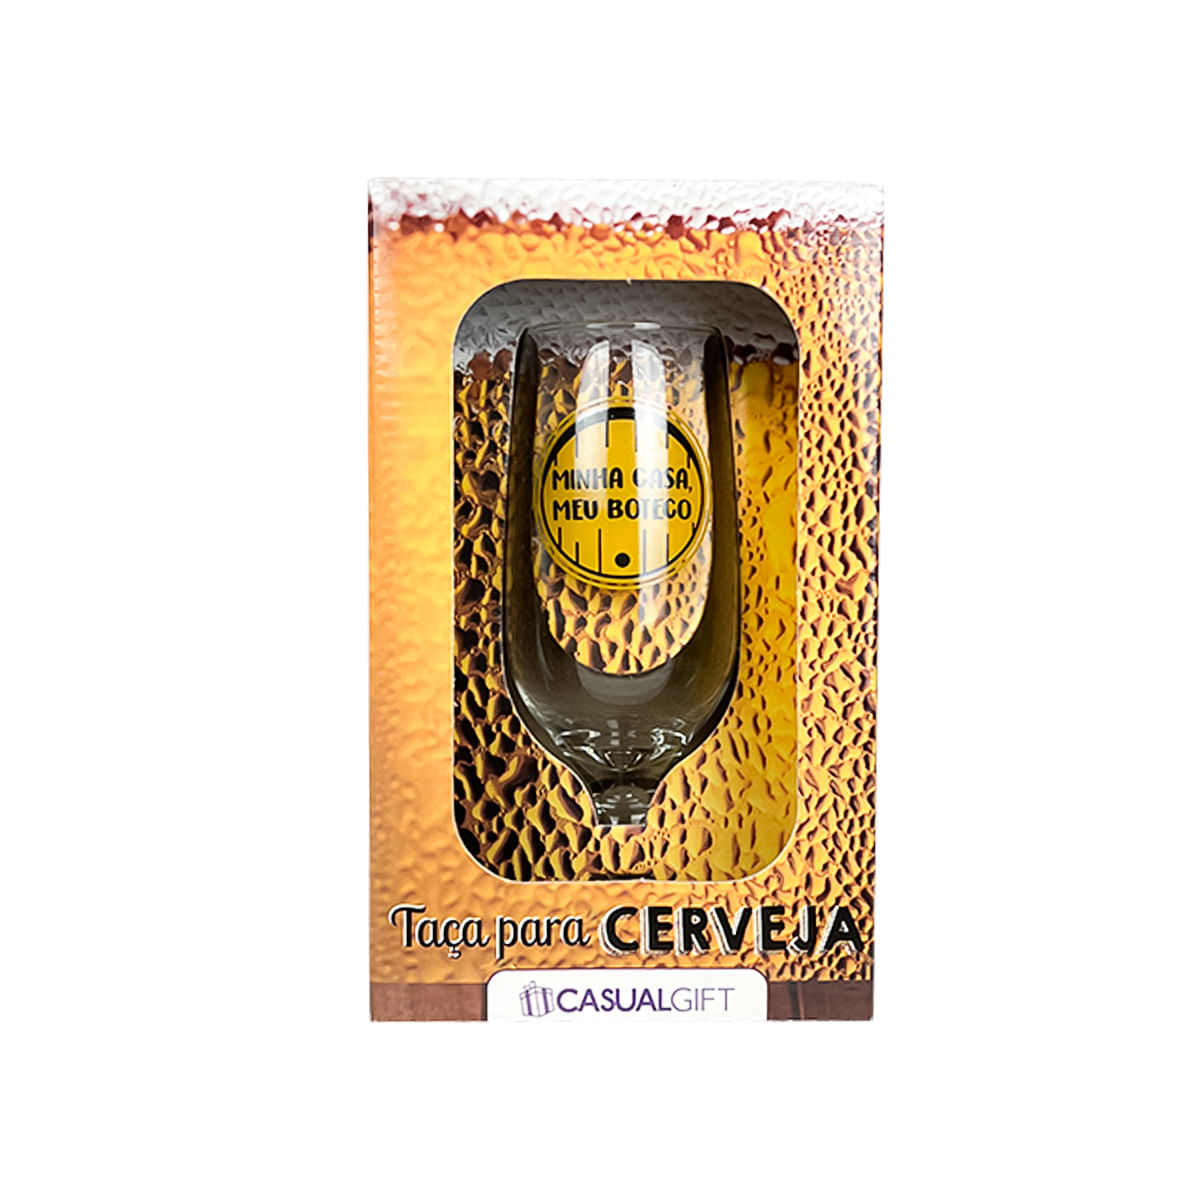 Taça para Cerveja em Vidro "Minha Casa, Meu Boteco" 300ml Casual Gift